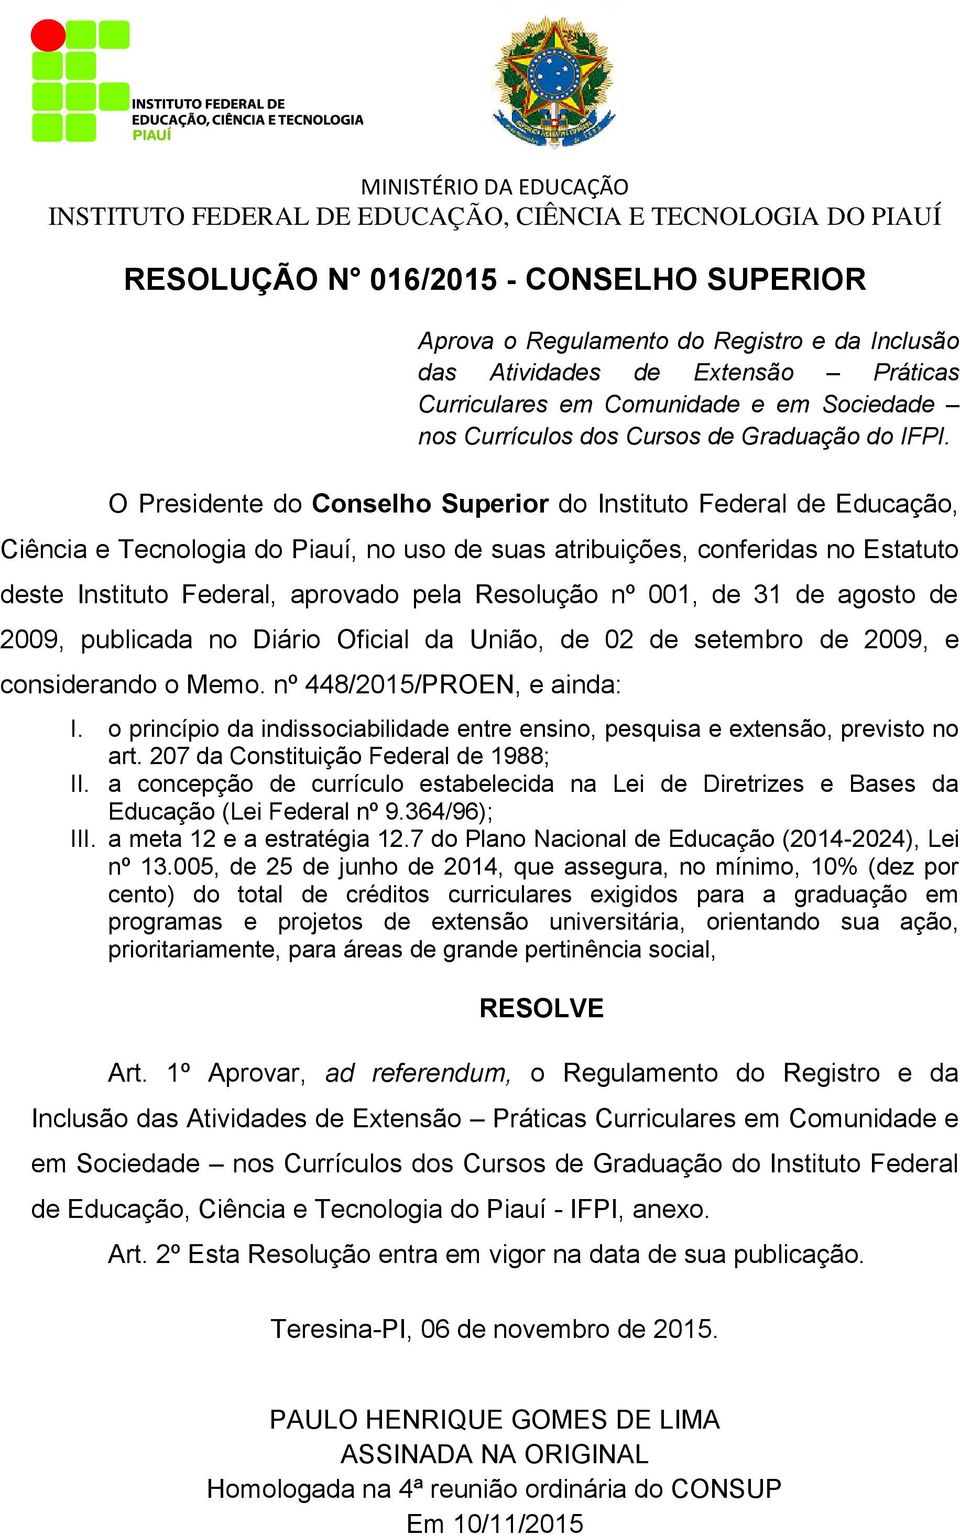 O Presidente do Conselho Superior do Instituto Federal de Educação, Ciência e Tecnologia do Piauí, no uso de suas atribuições, conferidas no Estatuto deste Instituto Federal, aprovado pela Resolução